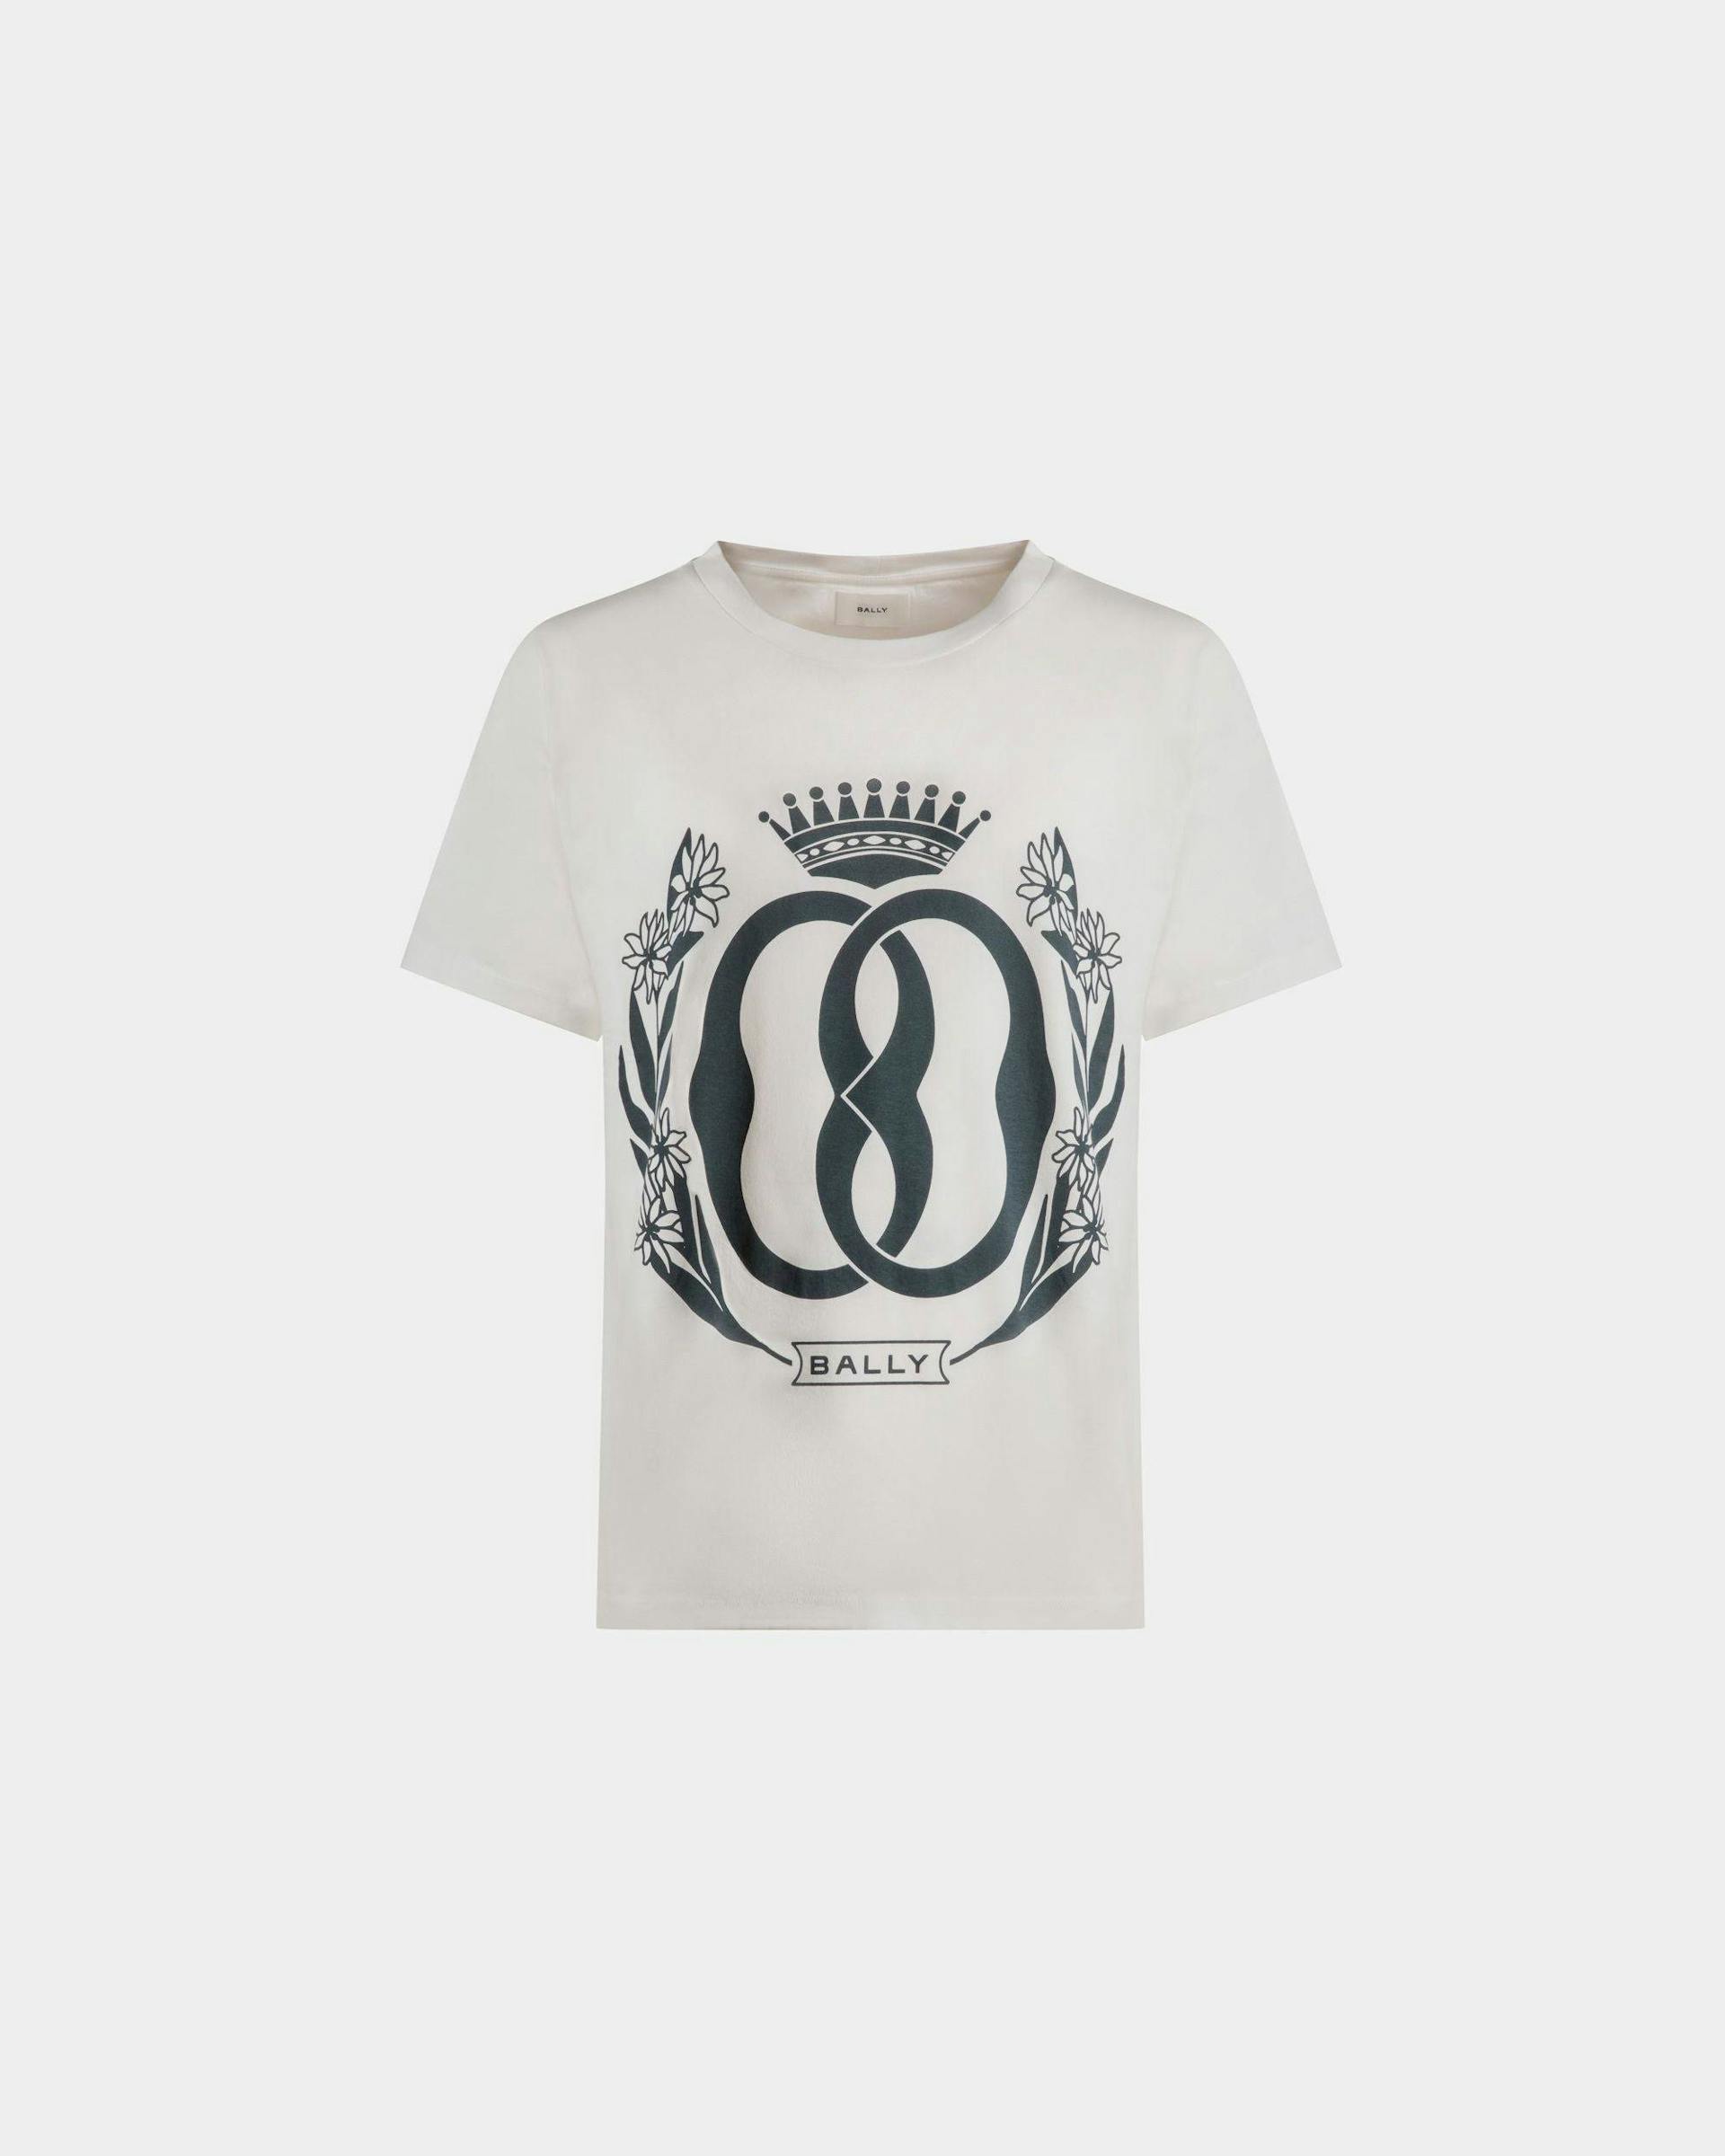 T-Shirt mit Foliendruck Aus weißer Baumwolle - Herren - Bally - 01